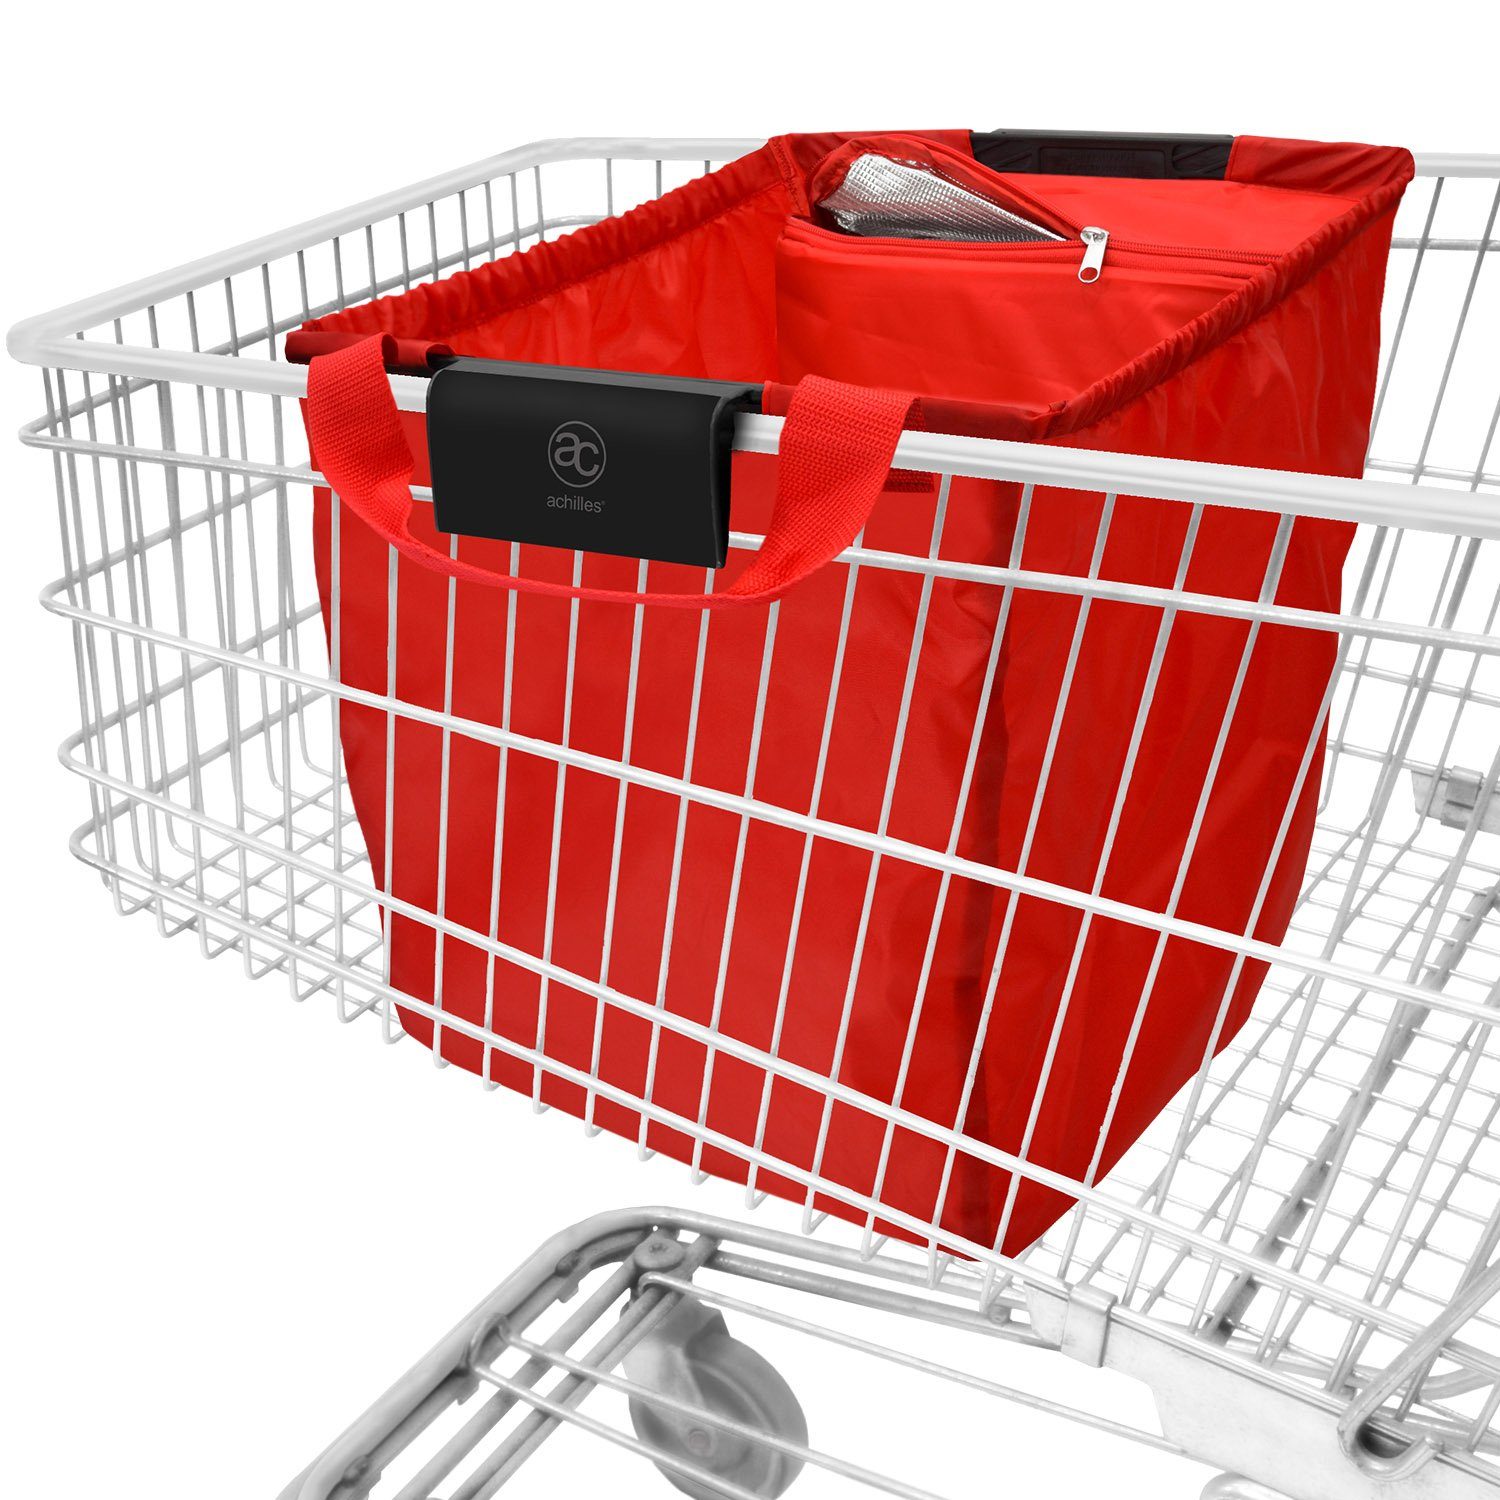 40 Einkaufsbeutel Kühlfunktion, mit l Easy-Cooler achilles rot Einkaufswagentasche